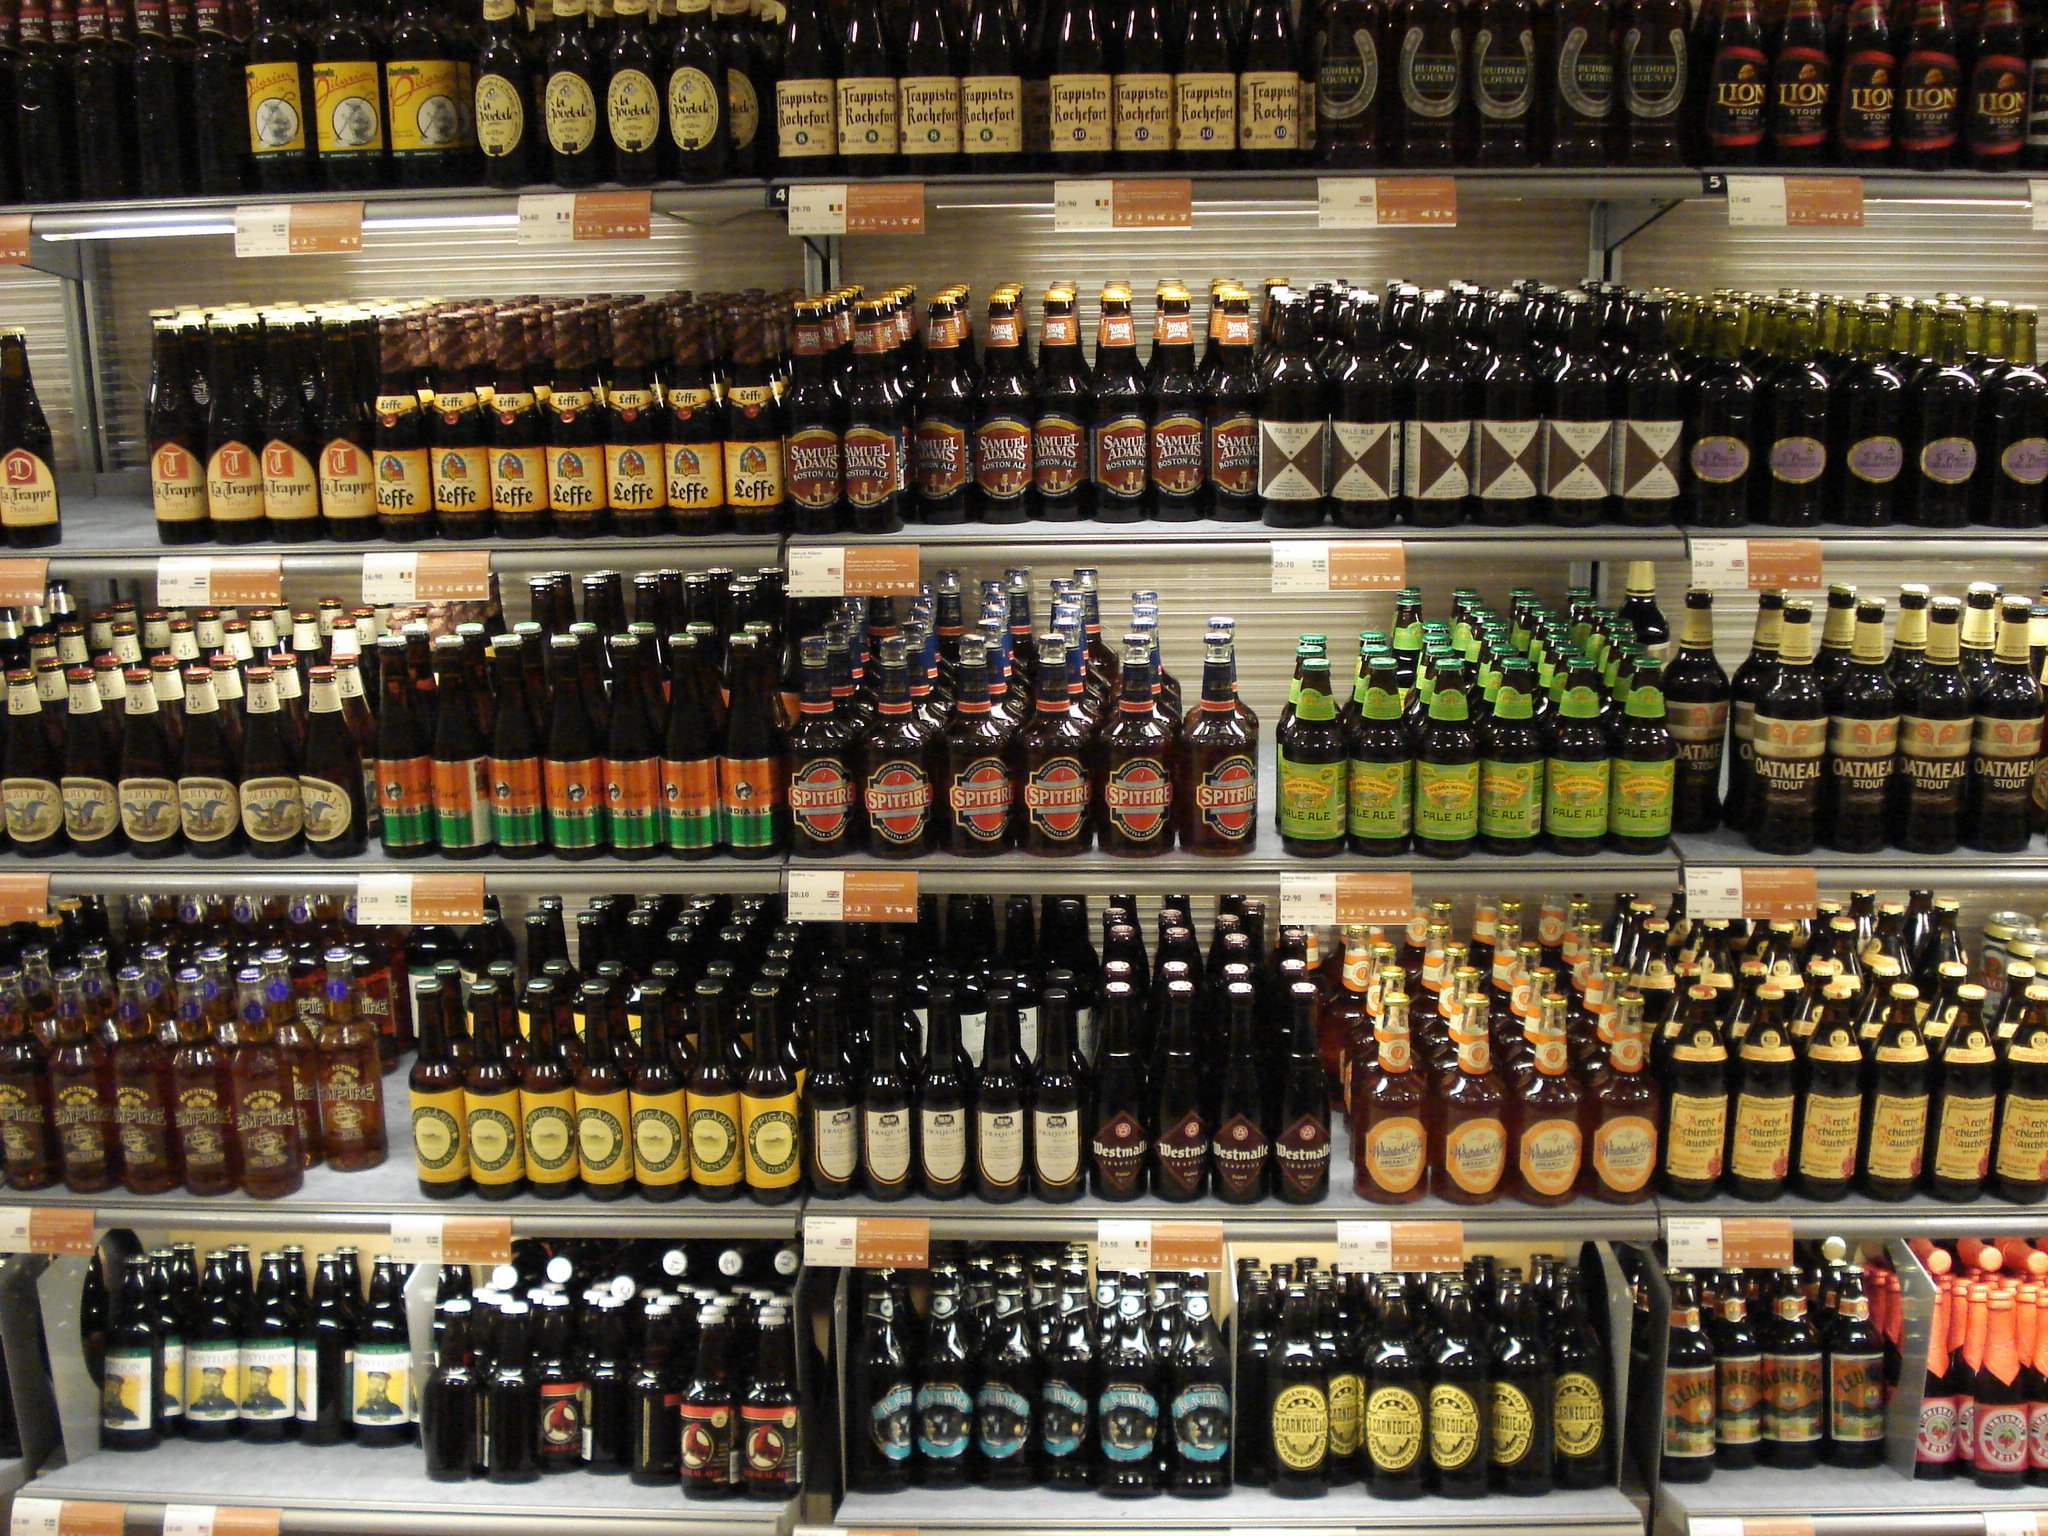 systemets beer brands.jpg?resize=1200,630 - Un village allemand confisque le stock de bières pour combattre un festival néo-nazi